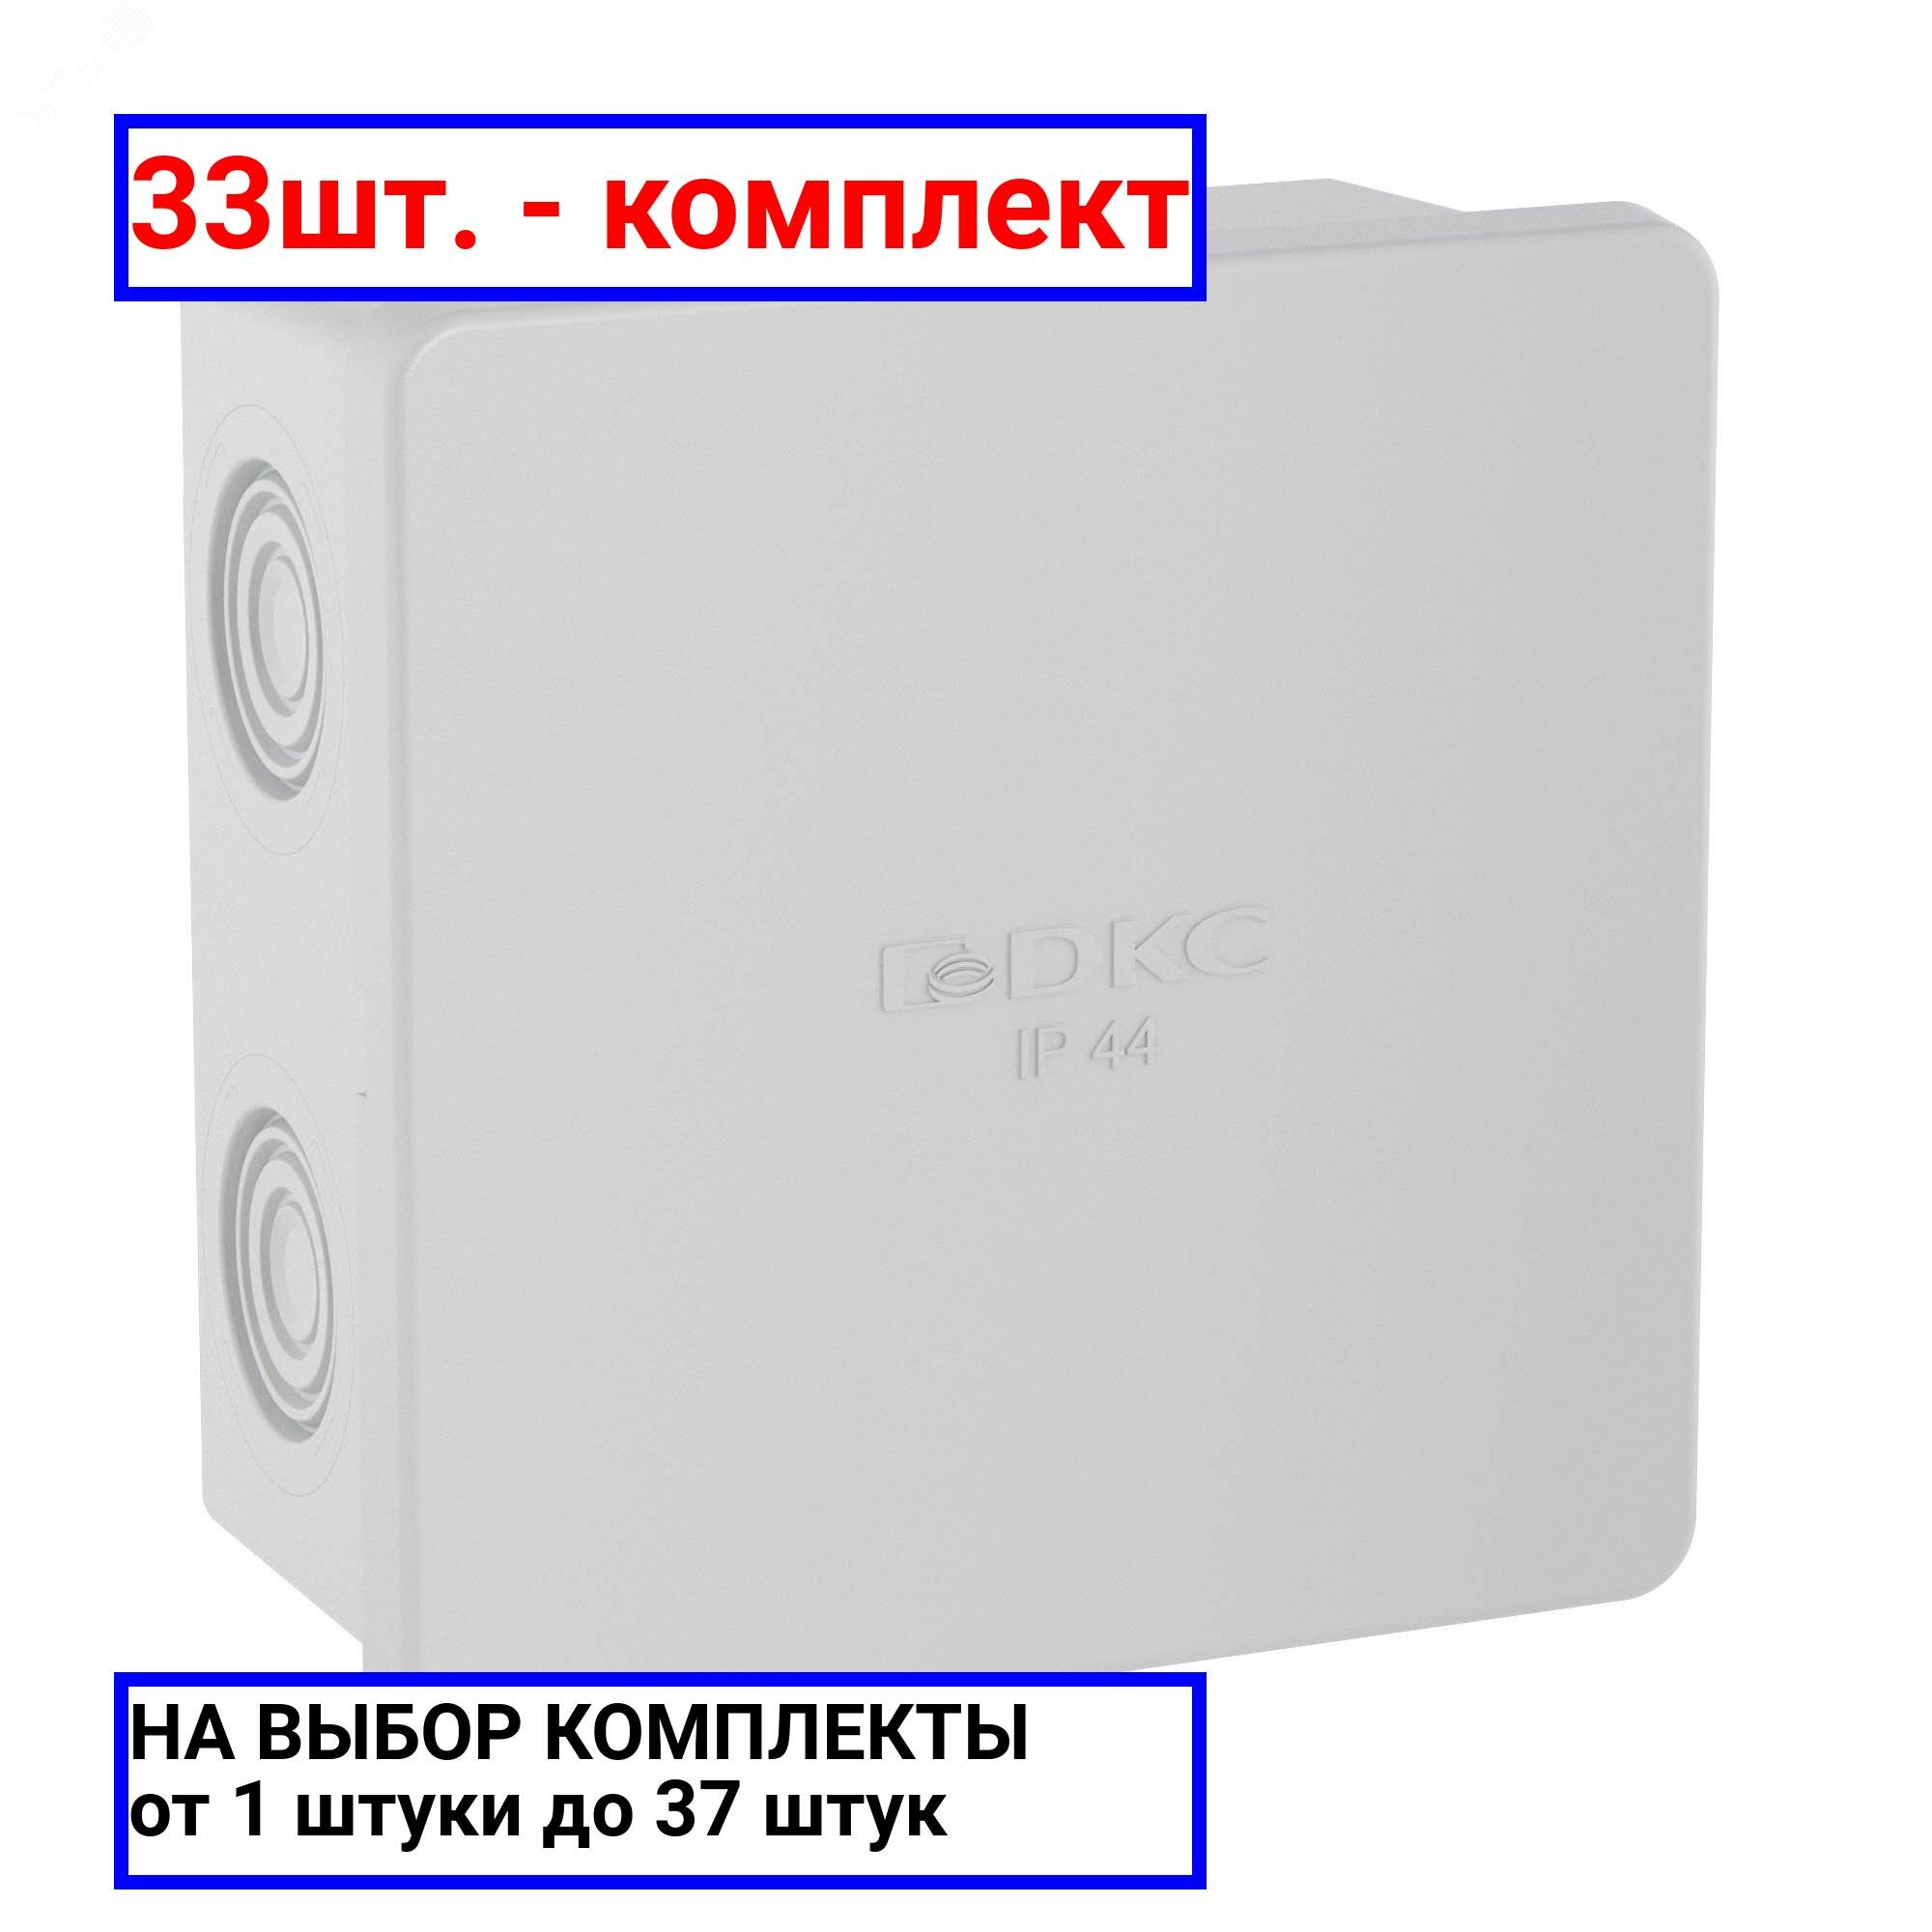 33шт. - Коробка распределительная 80х80х40мм IP44 с кабельными вводами / DKC; арт. 53700; оригинал / - комплект 33шт